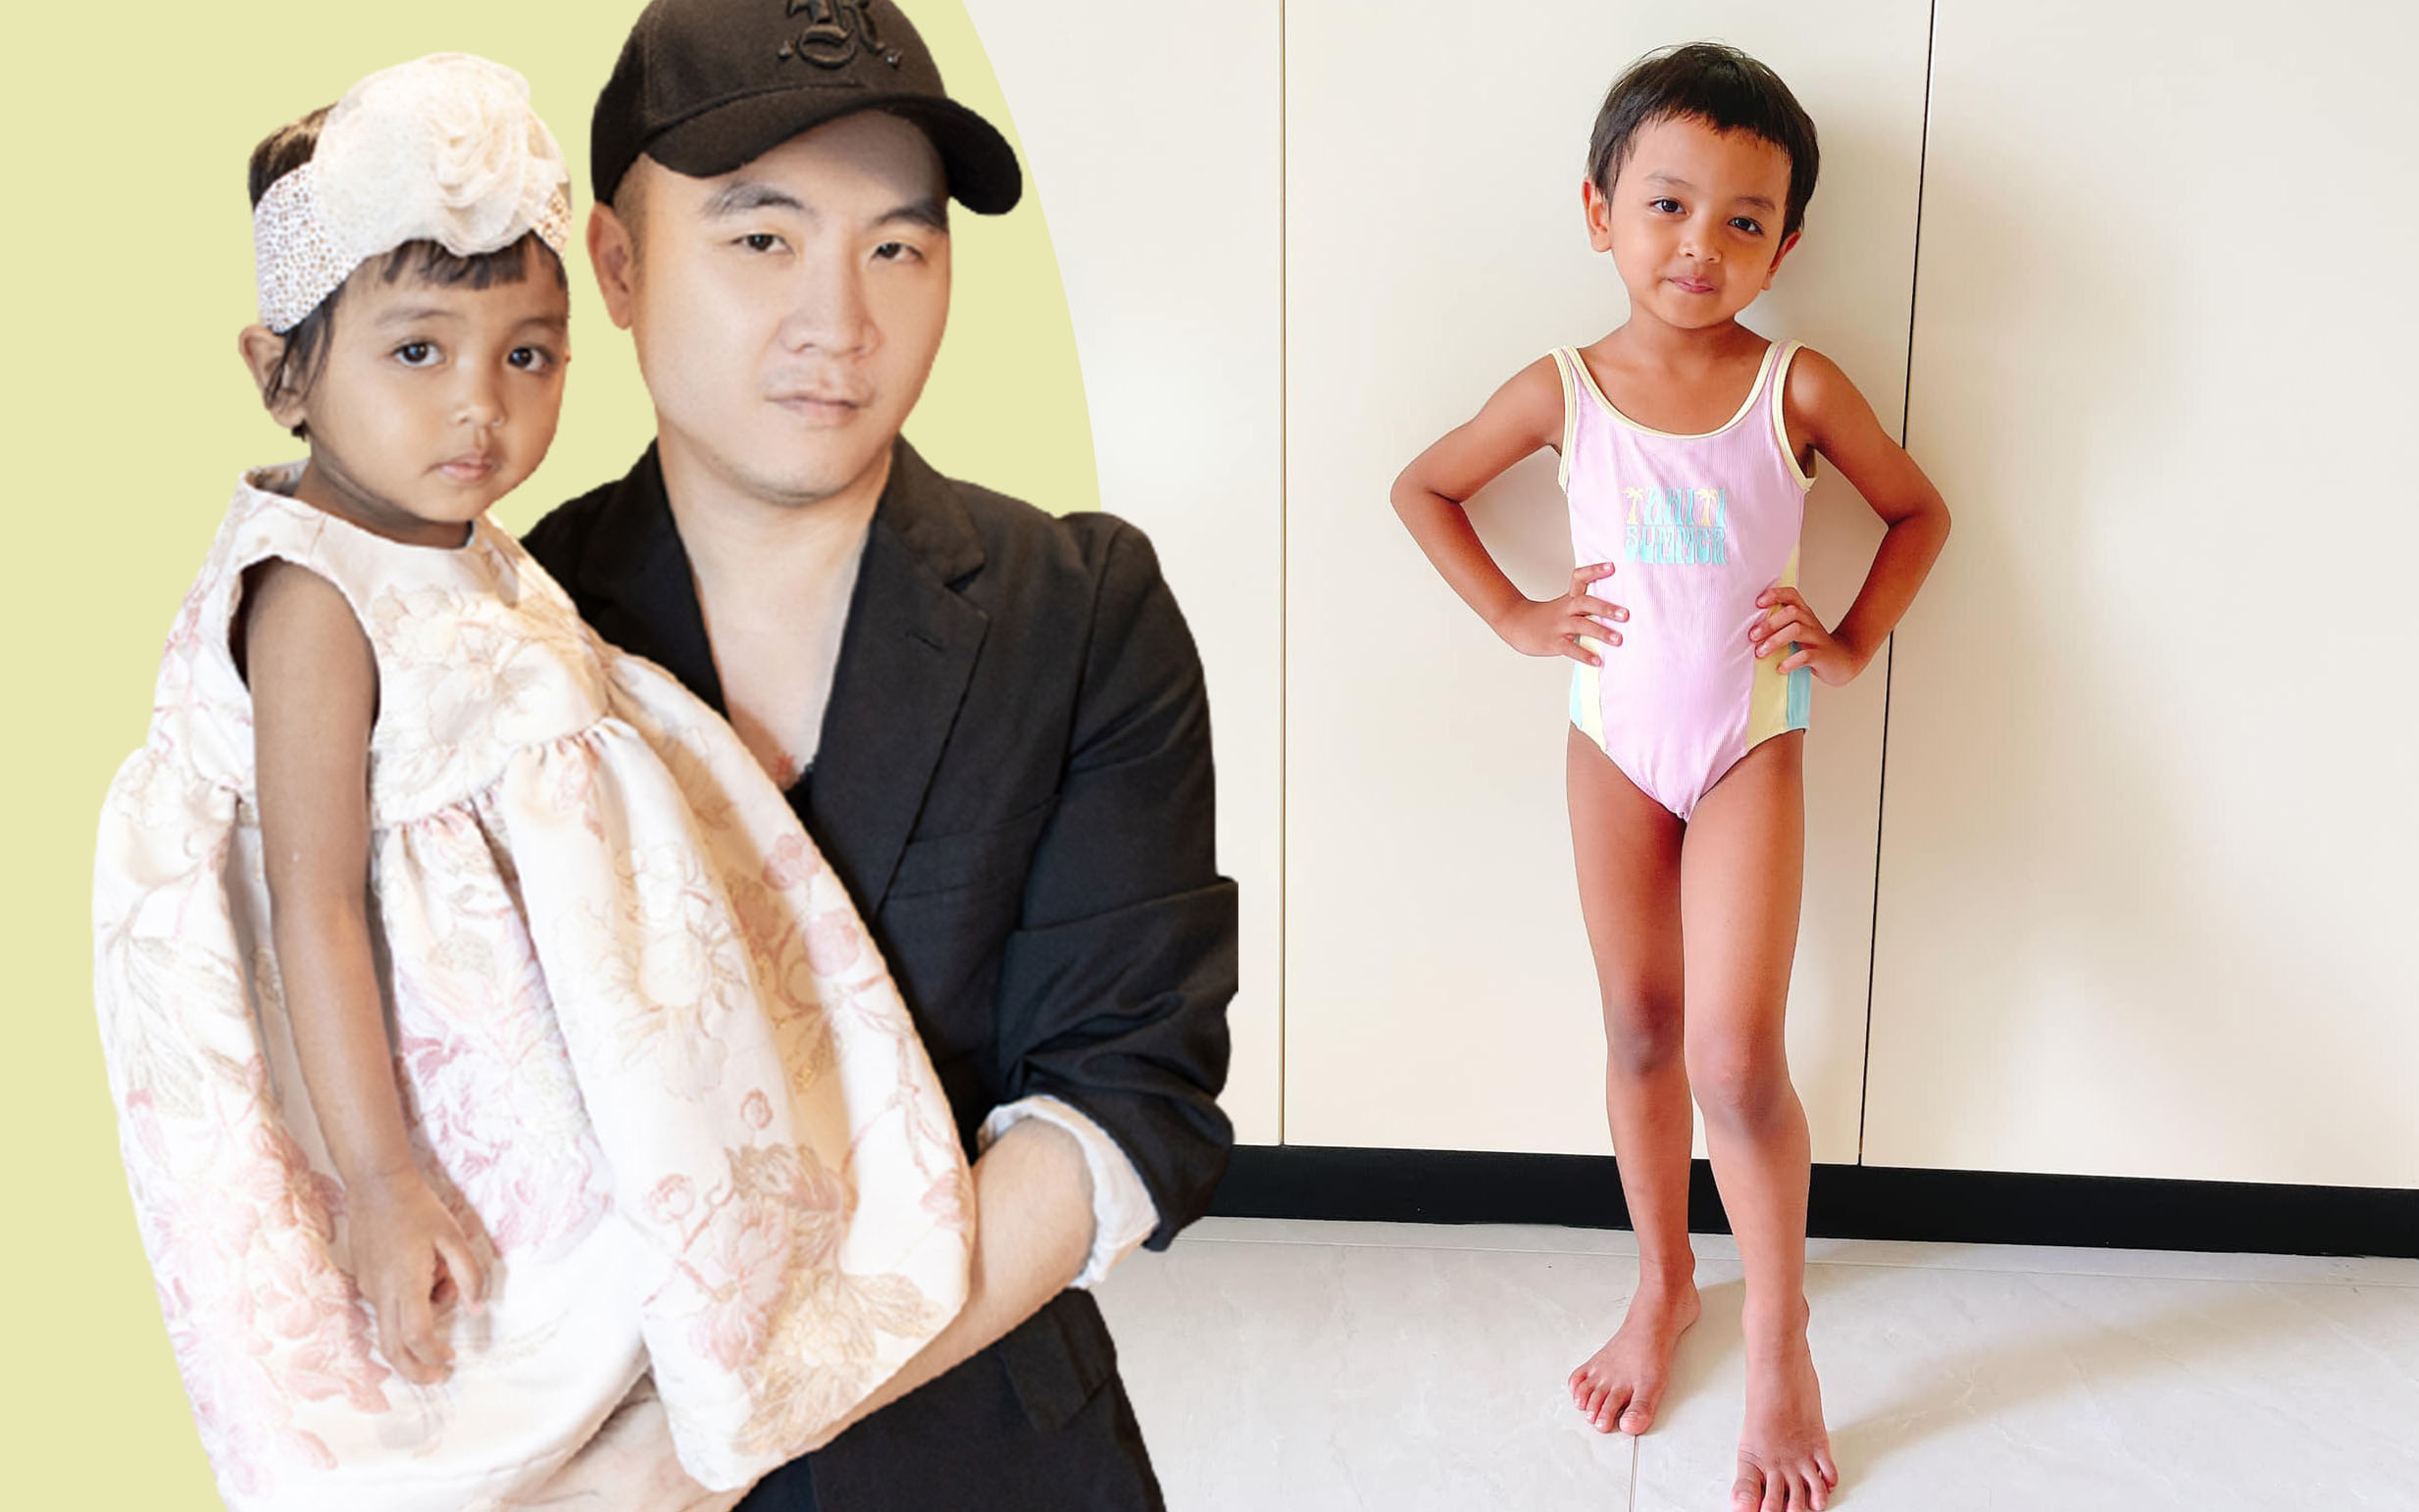 Con gái của NTK Đỗ Mạnh Cường: Từ cô bé suy dinh dưỡng sau 2 năm tăng 25cm chiều cao, bố khẳng định "có tỷ lệ vàng để trở thành siêu mẫu" 